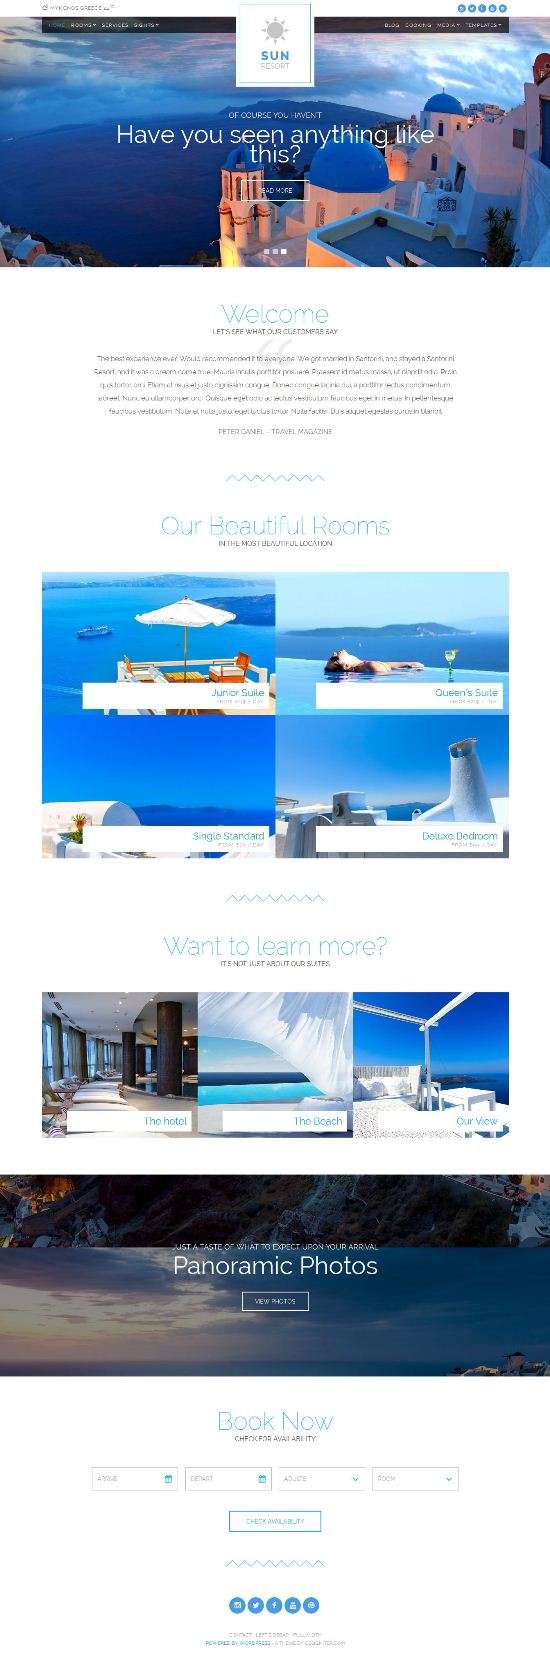 sun resort cssigniter hotel booking theme 01 - Sun Resort WordPress Theme